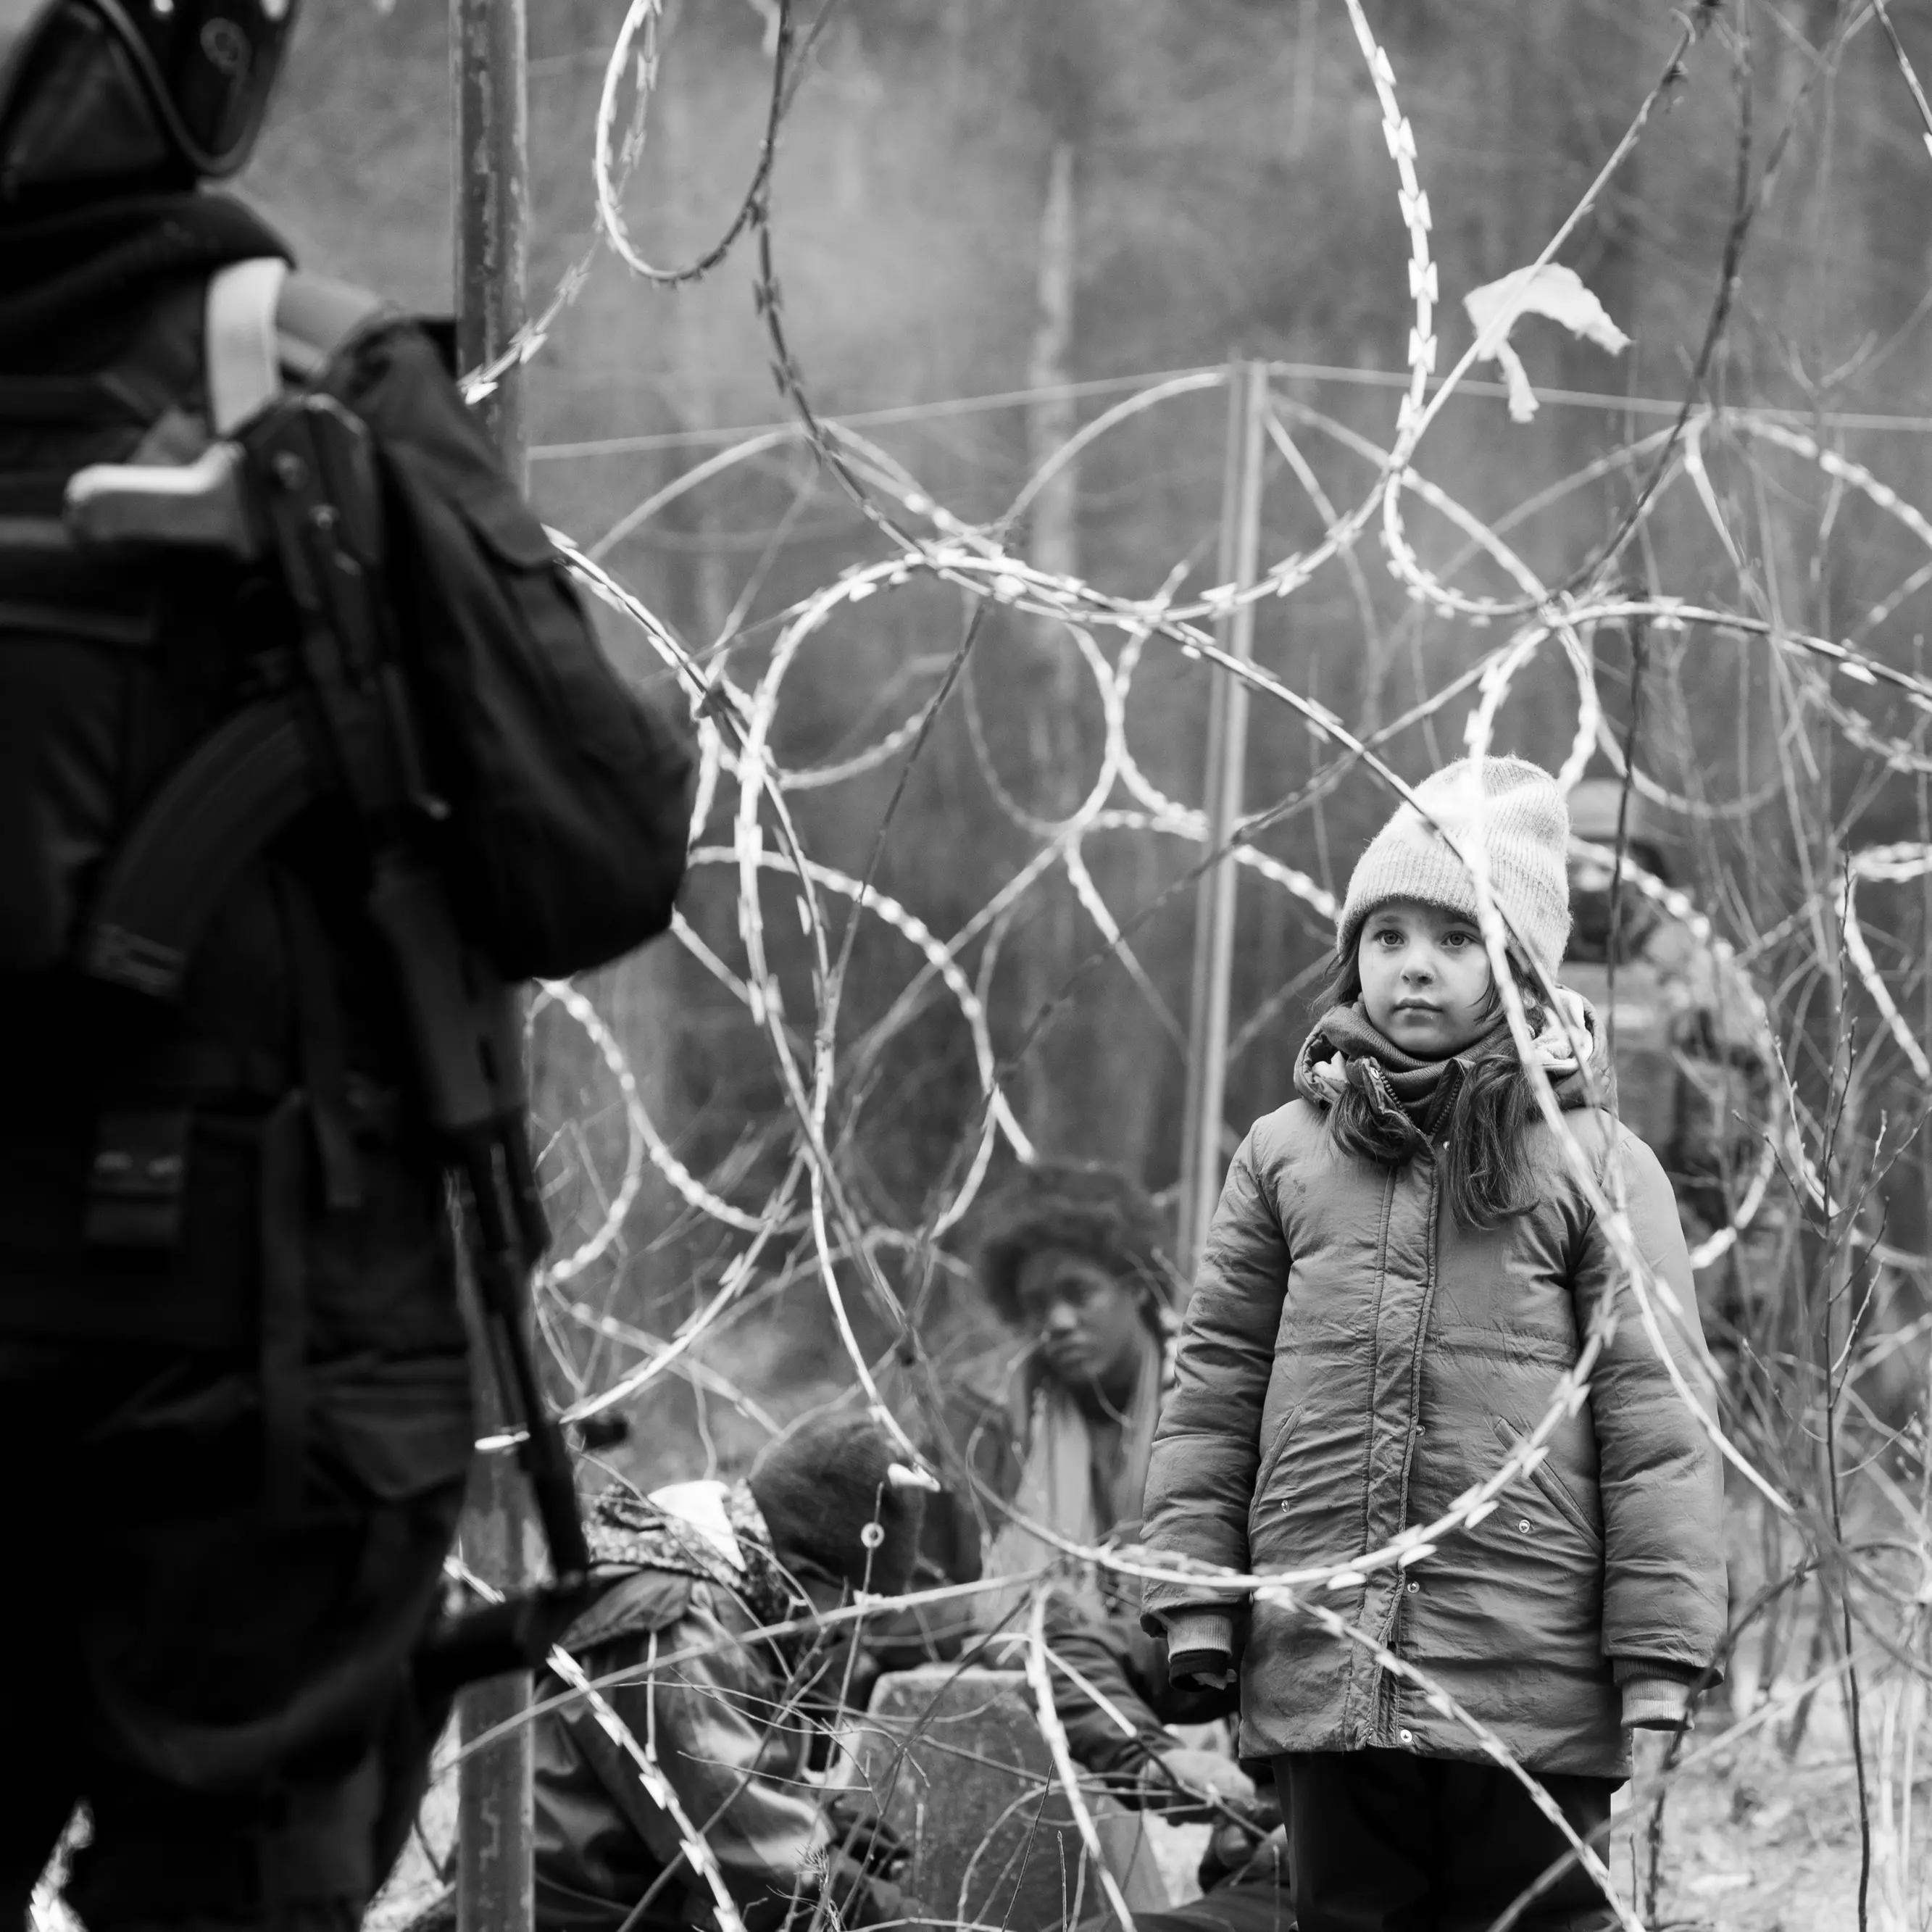 Green Border, il film sui migranti che ci mette in difficoltà